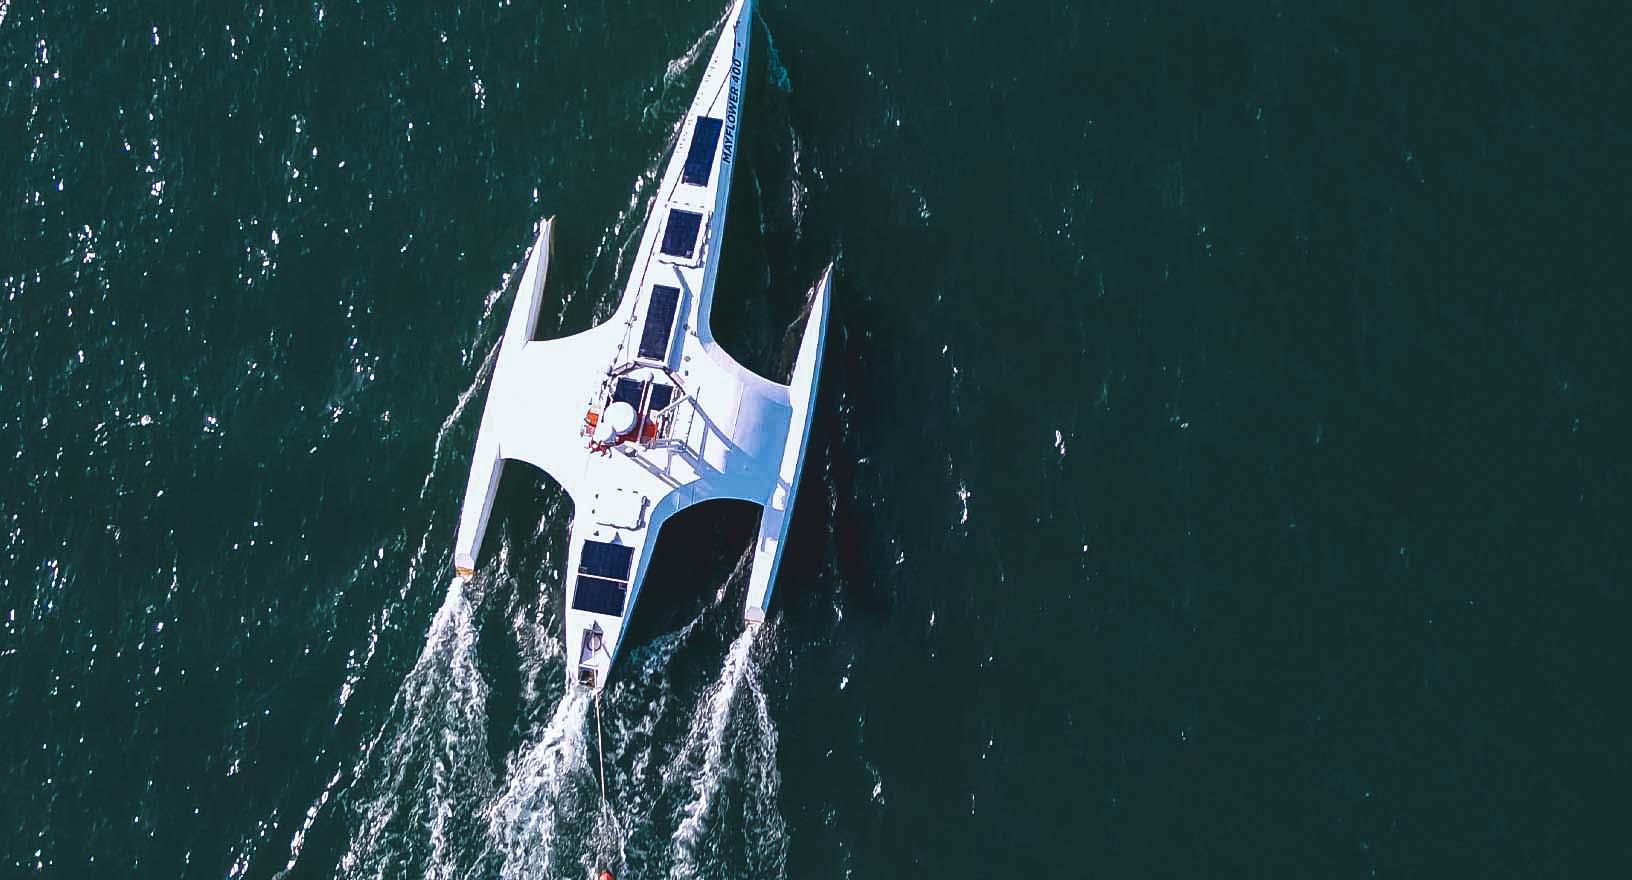 Navio autônomo Mayflower navegando de forma autônoma por verdes águas oceânicas, equipado com tecnologias que proporcionam autonomia garantida